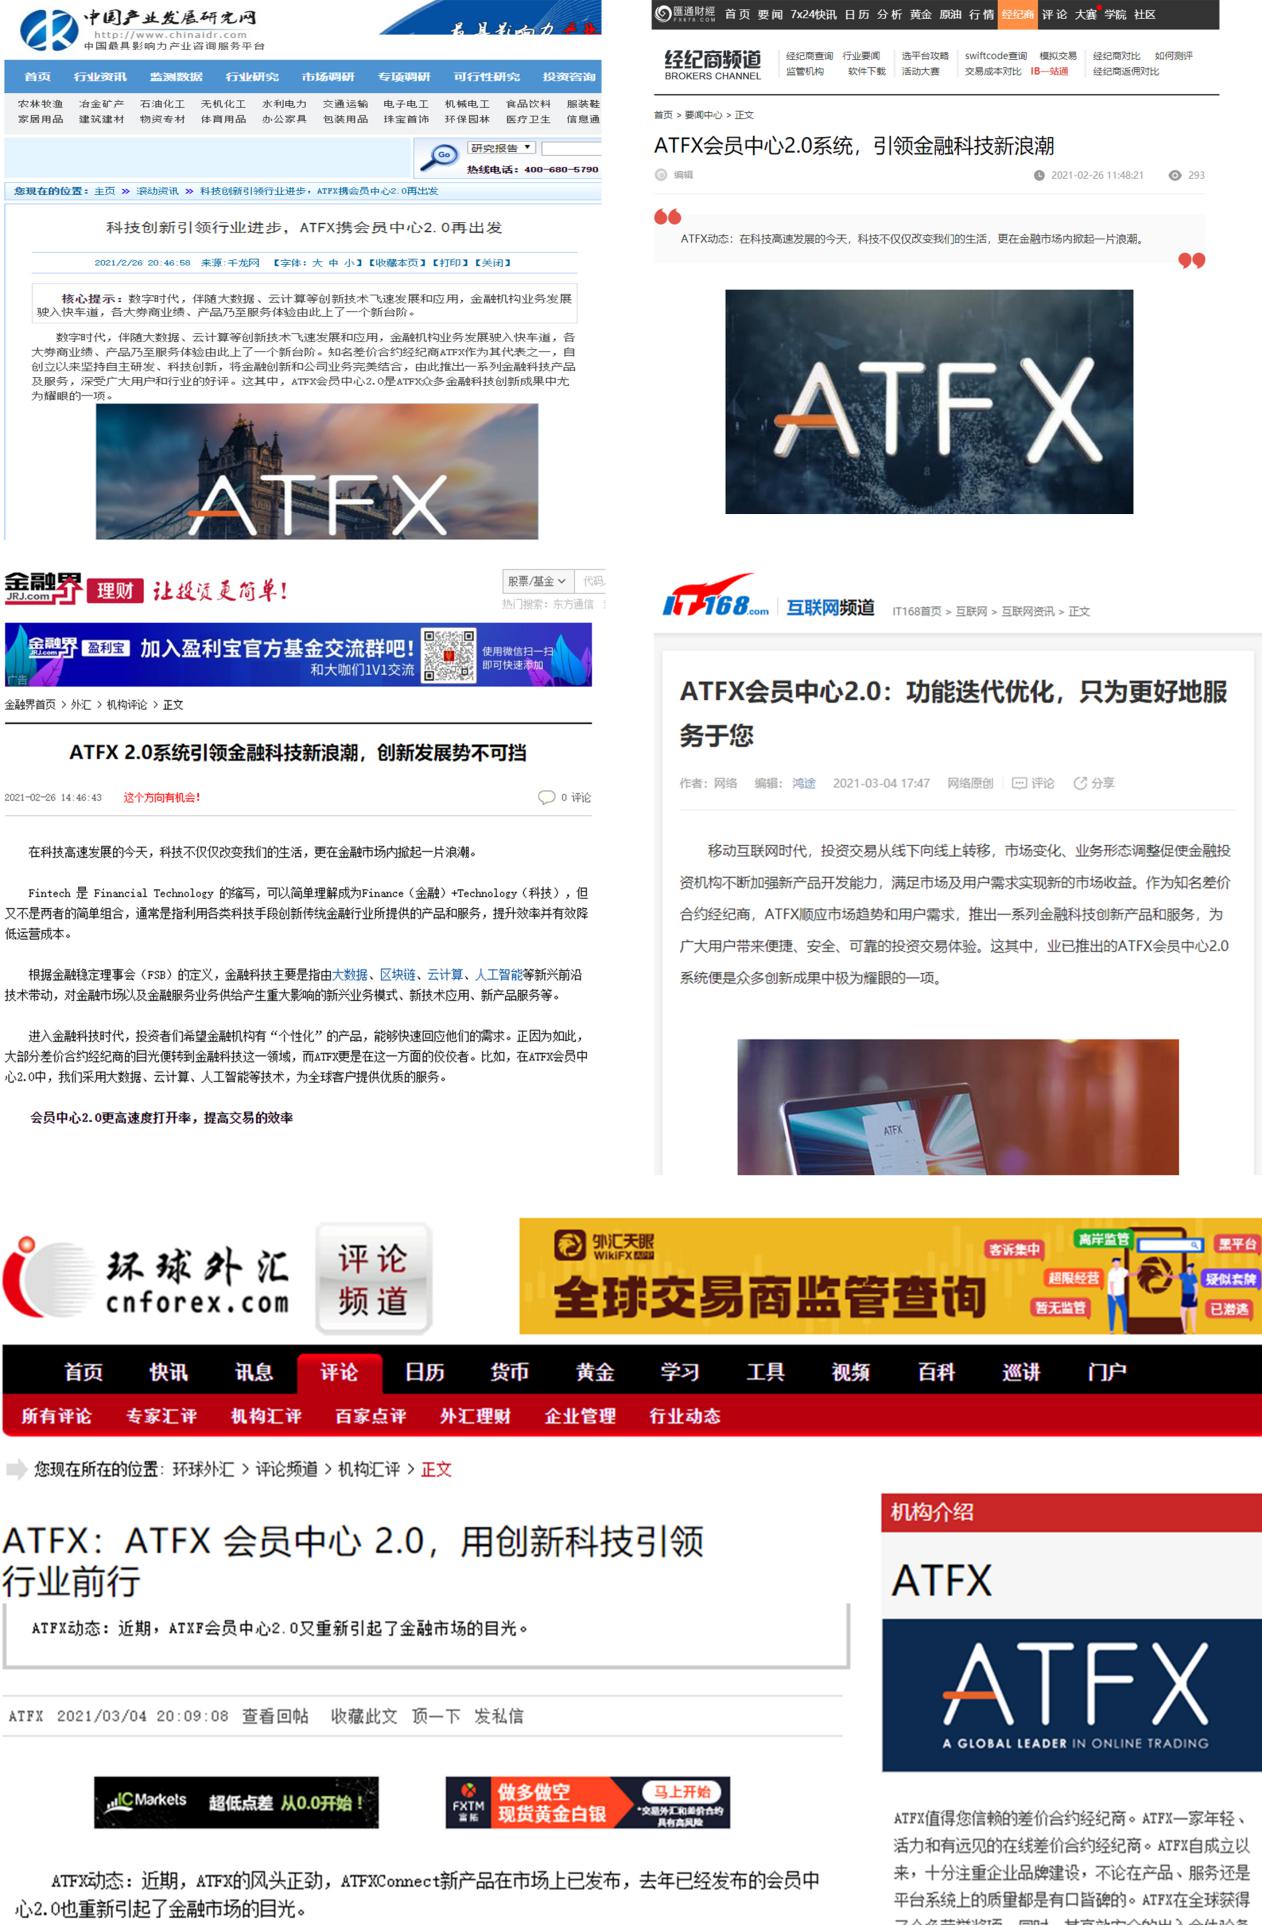 刷屏！ATFX会员中心2.0再次燃爆媒体圈，各大媒体报道密集展开